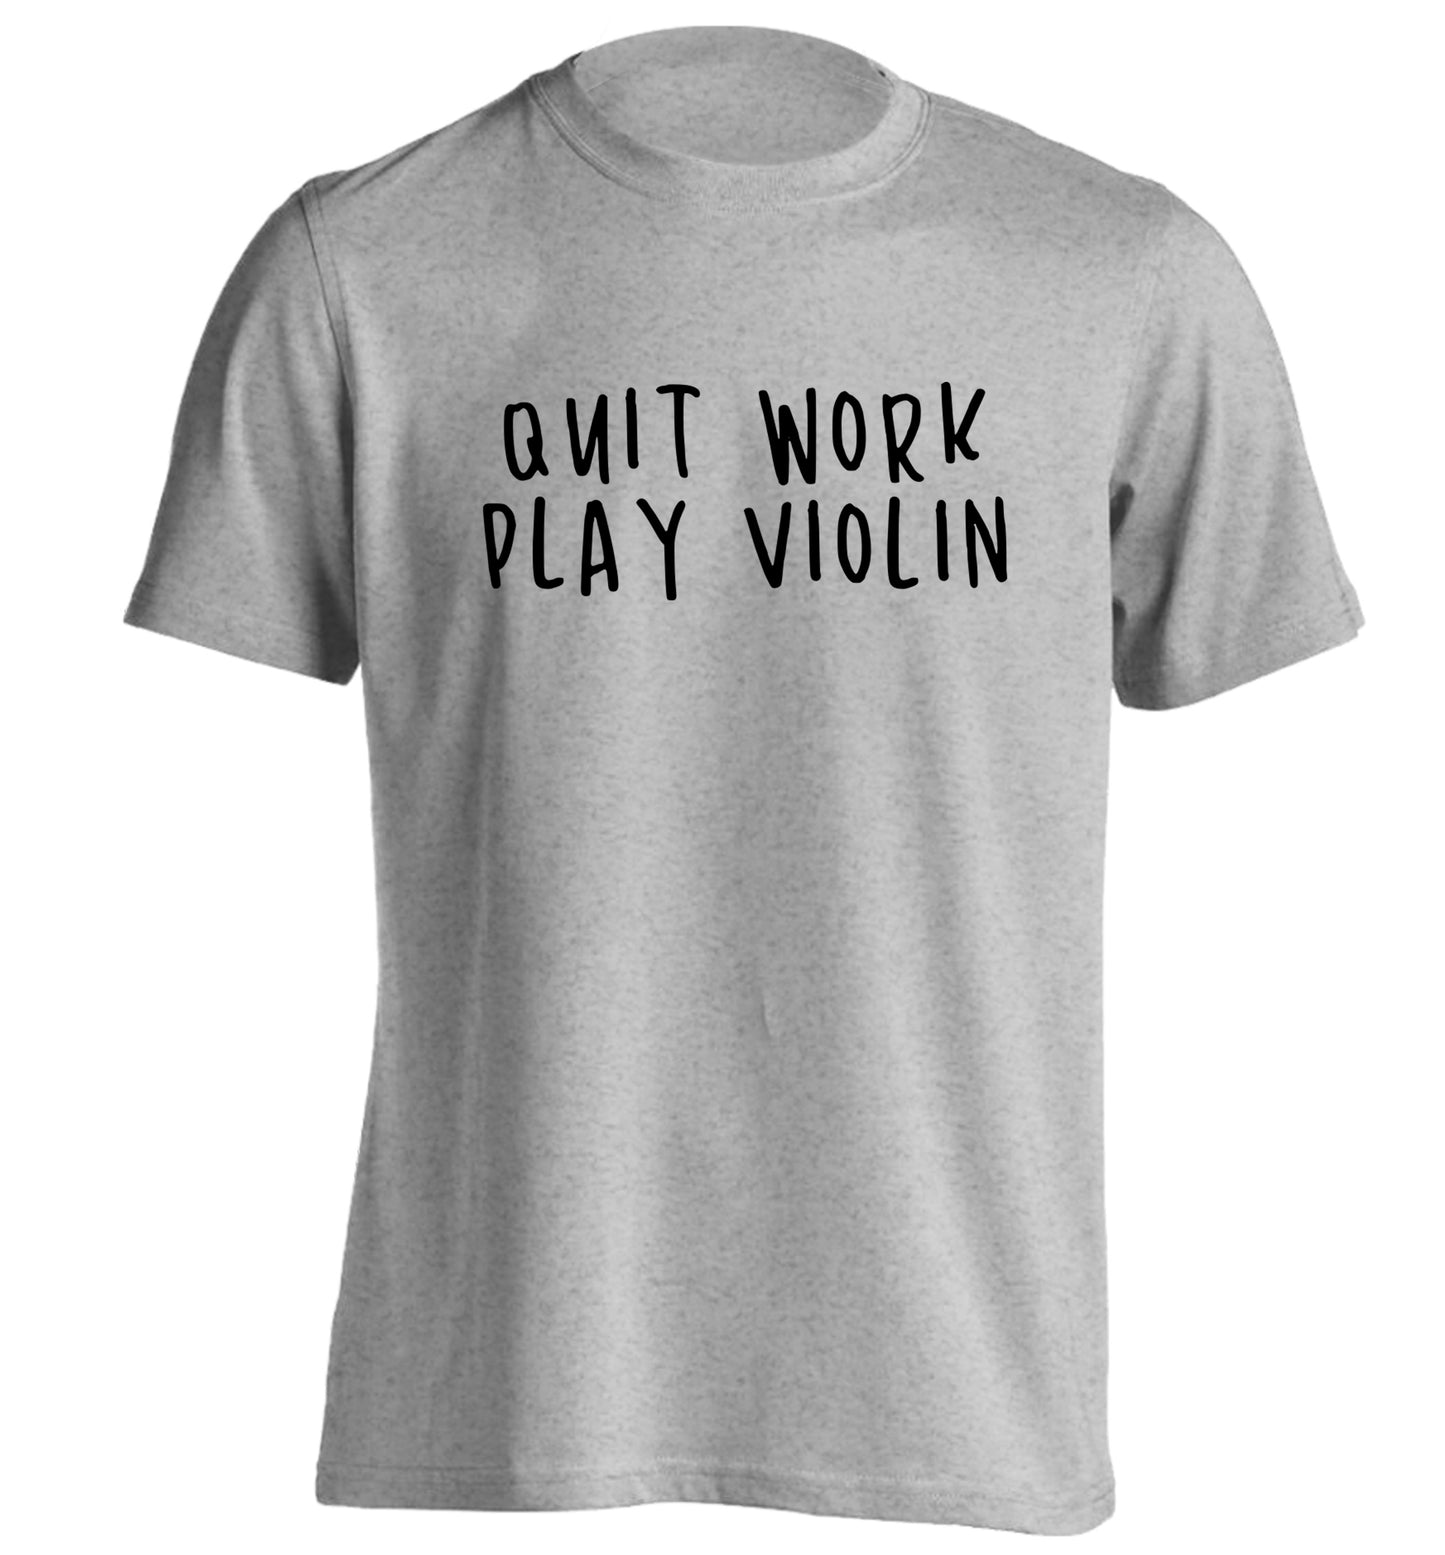 Quit work play violin adults unisex grey Tshirt 2XL